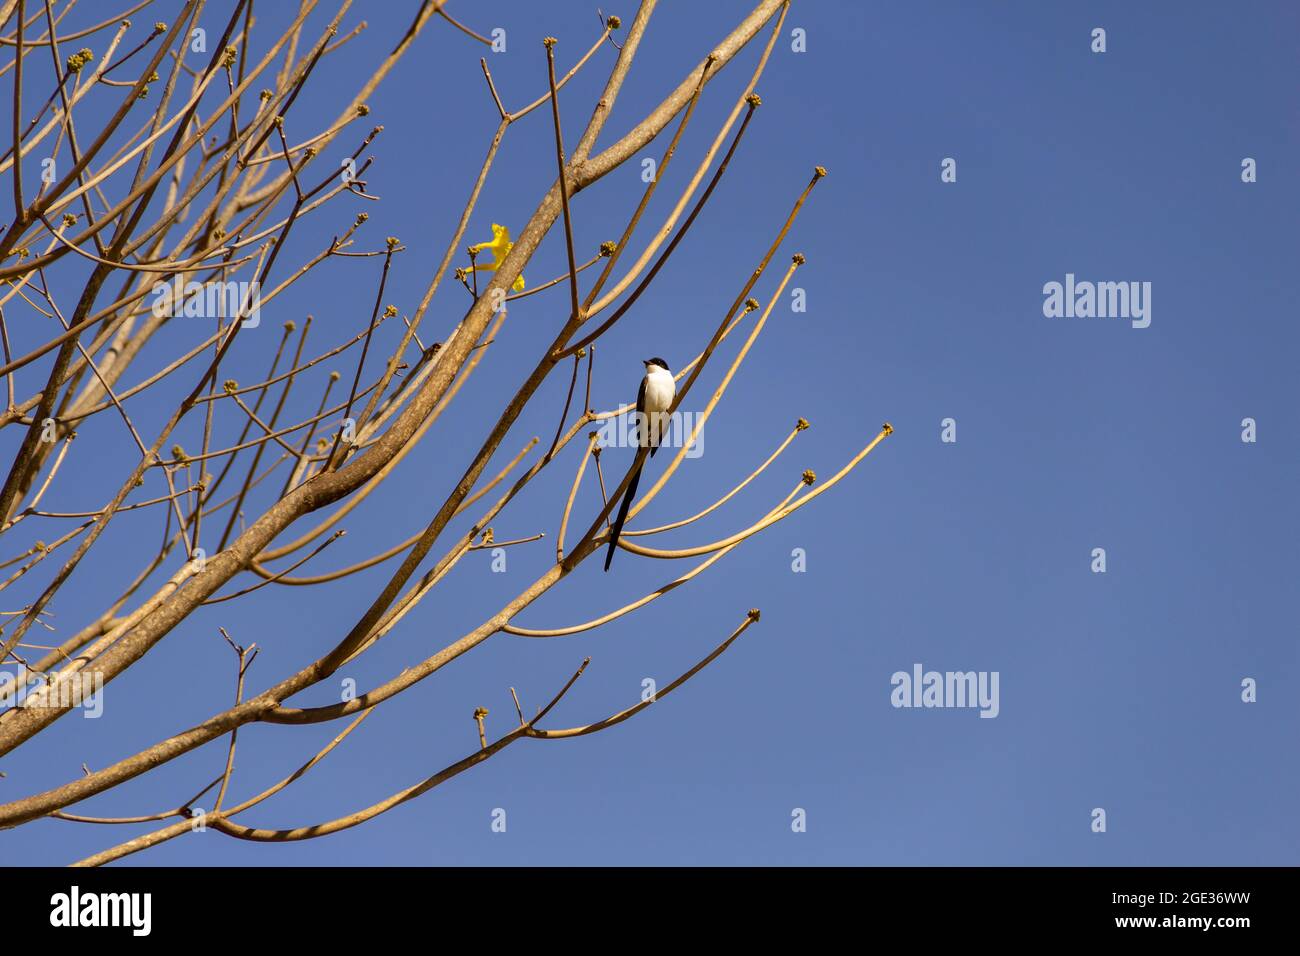 Un pájaro (Tyrannus sabana) encaramado en una rama de árbol sin hojas con el cielo azul en el fondo. 'Tesourinha'. Foto de stock